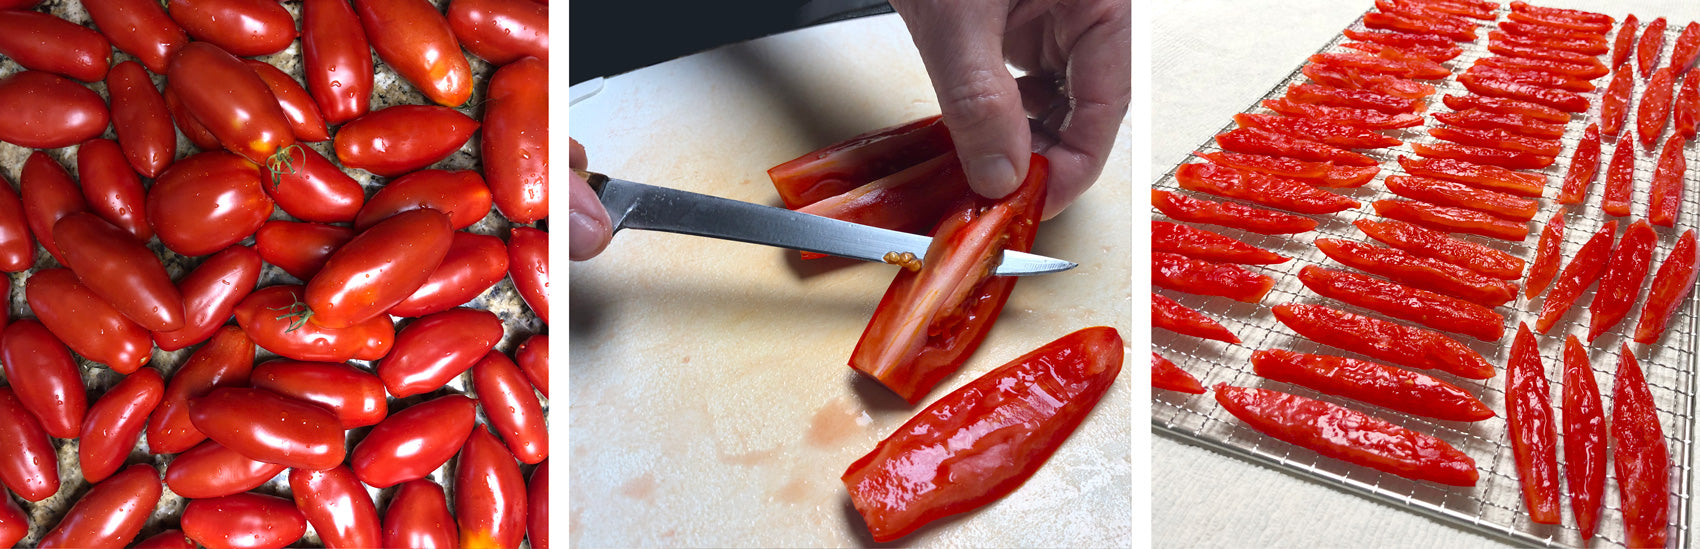 Prepare tomato by slicing